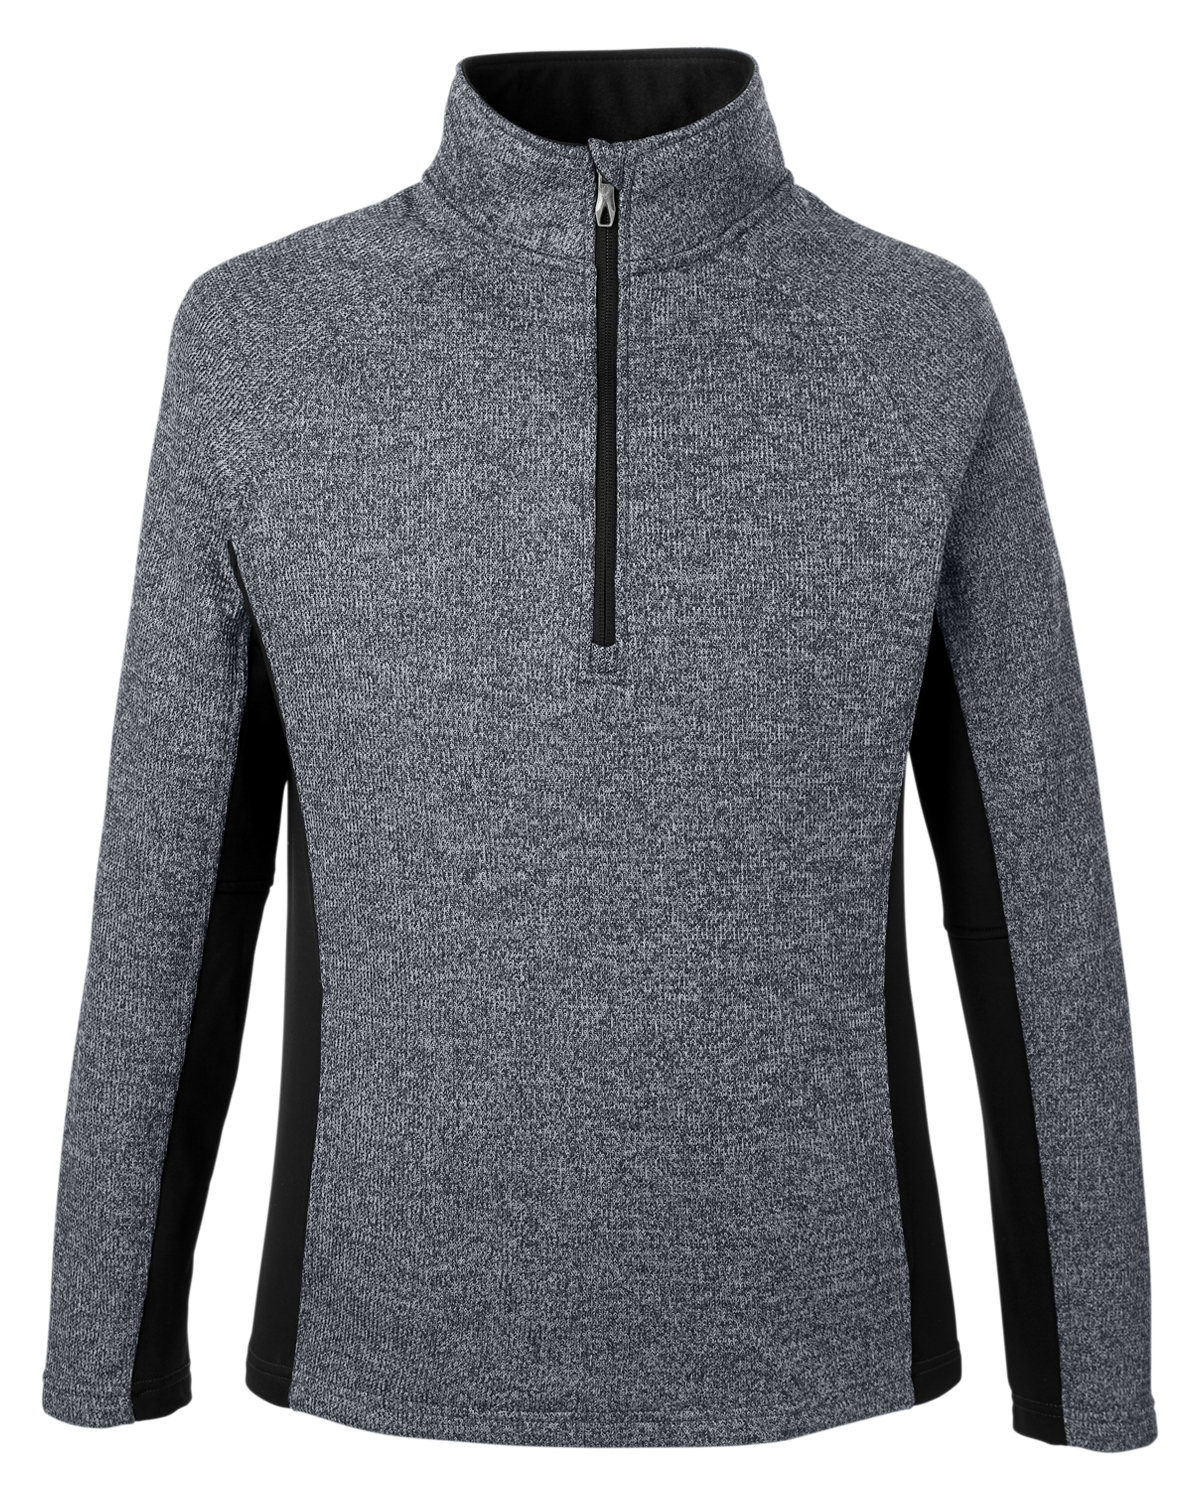 Spyder S16561 - Men's Constant Half-Zip Sweater